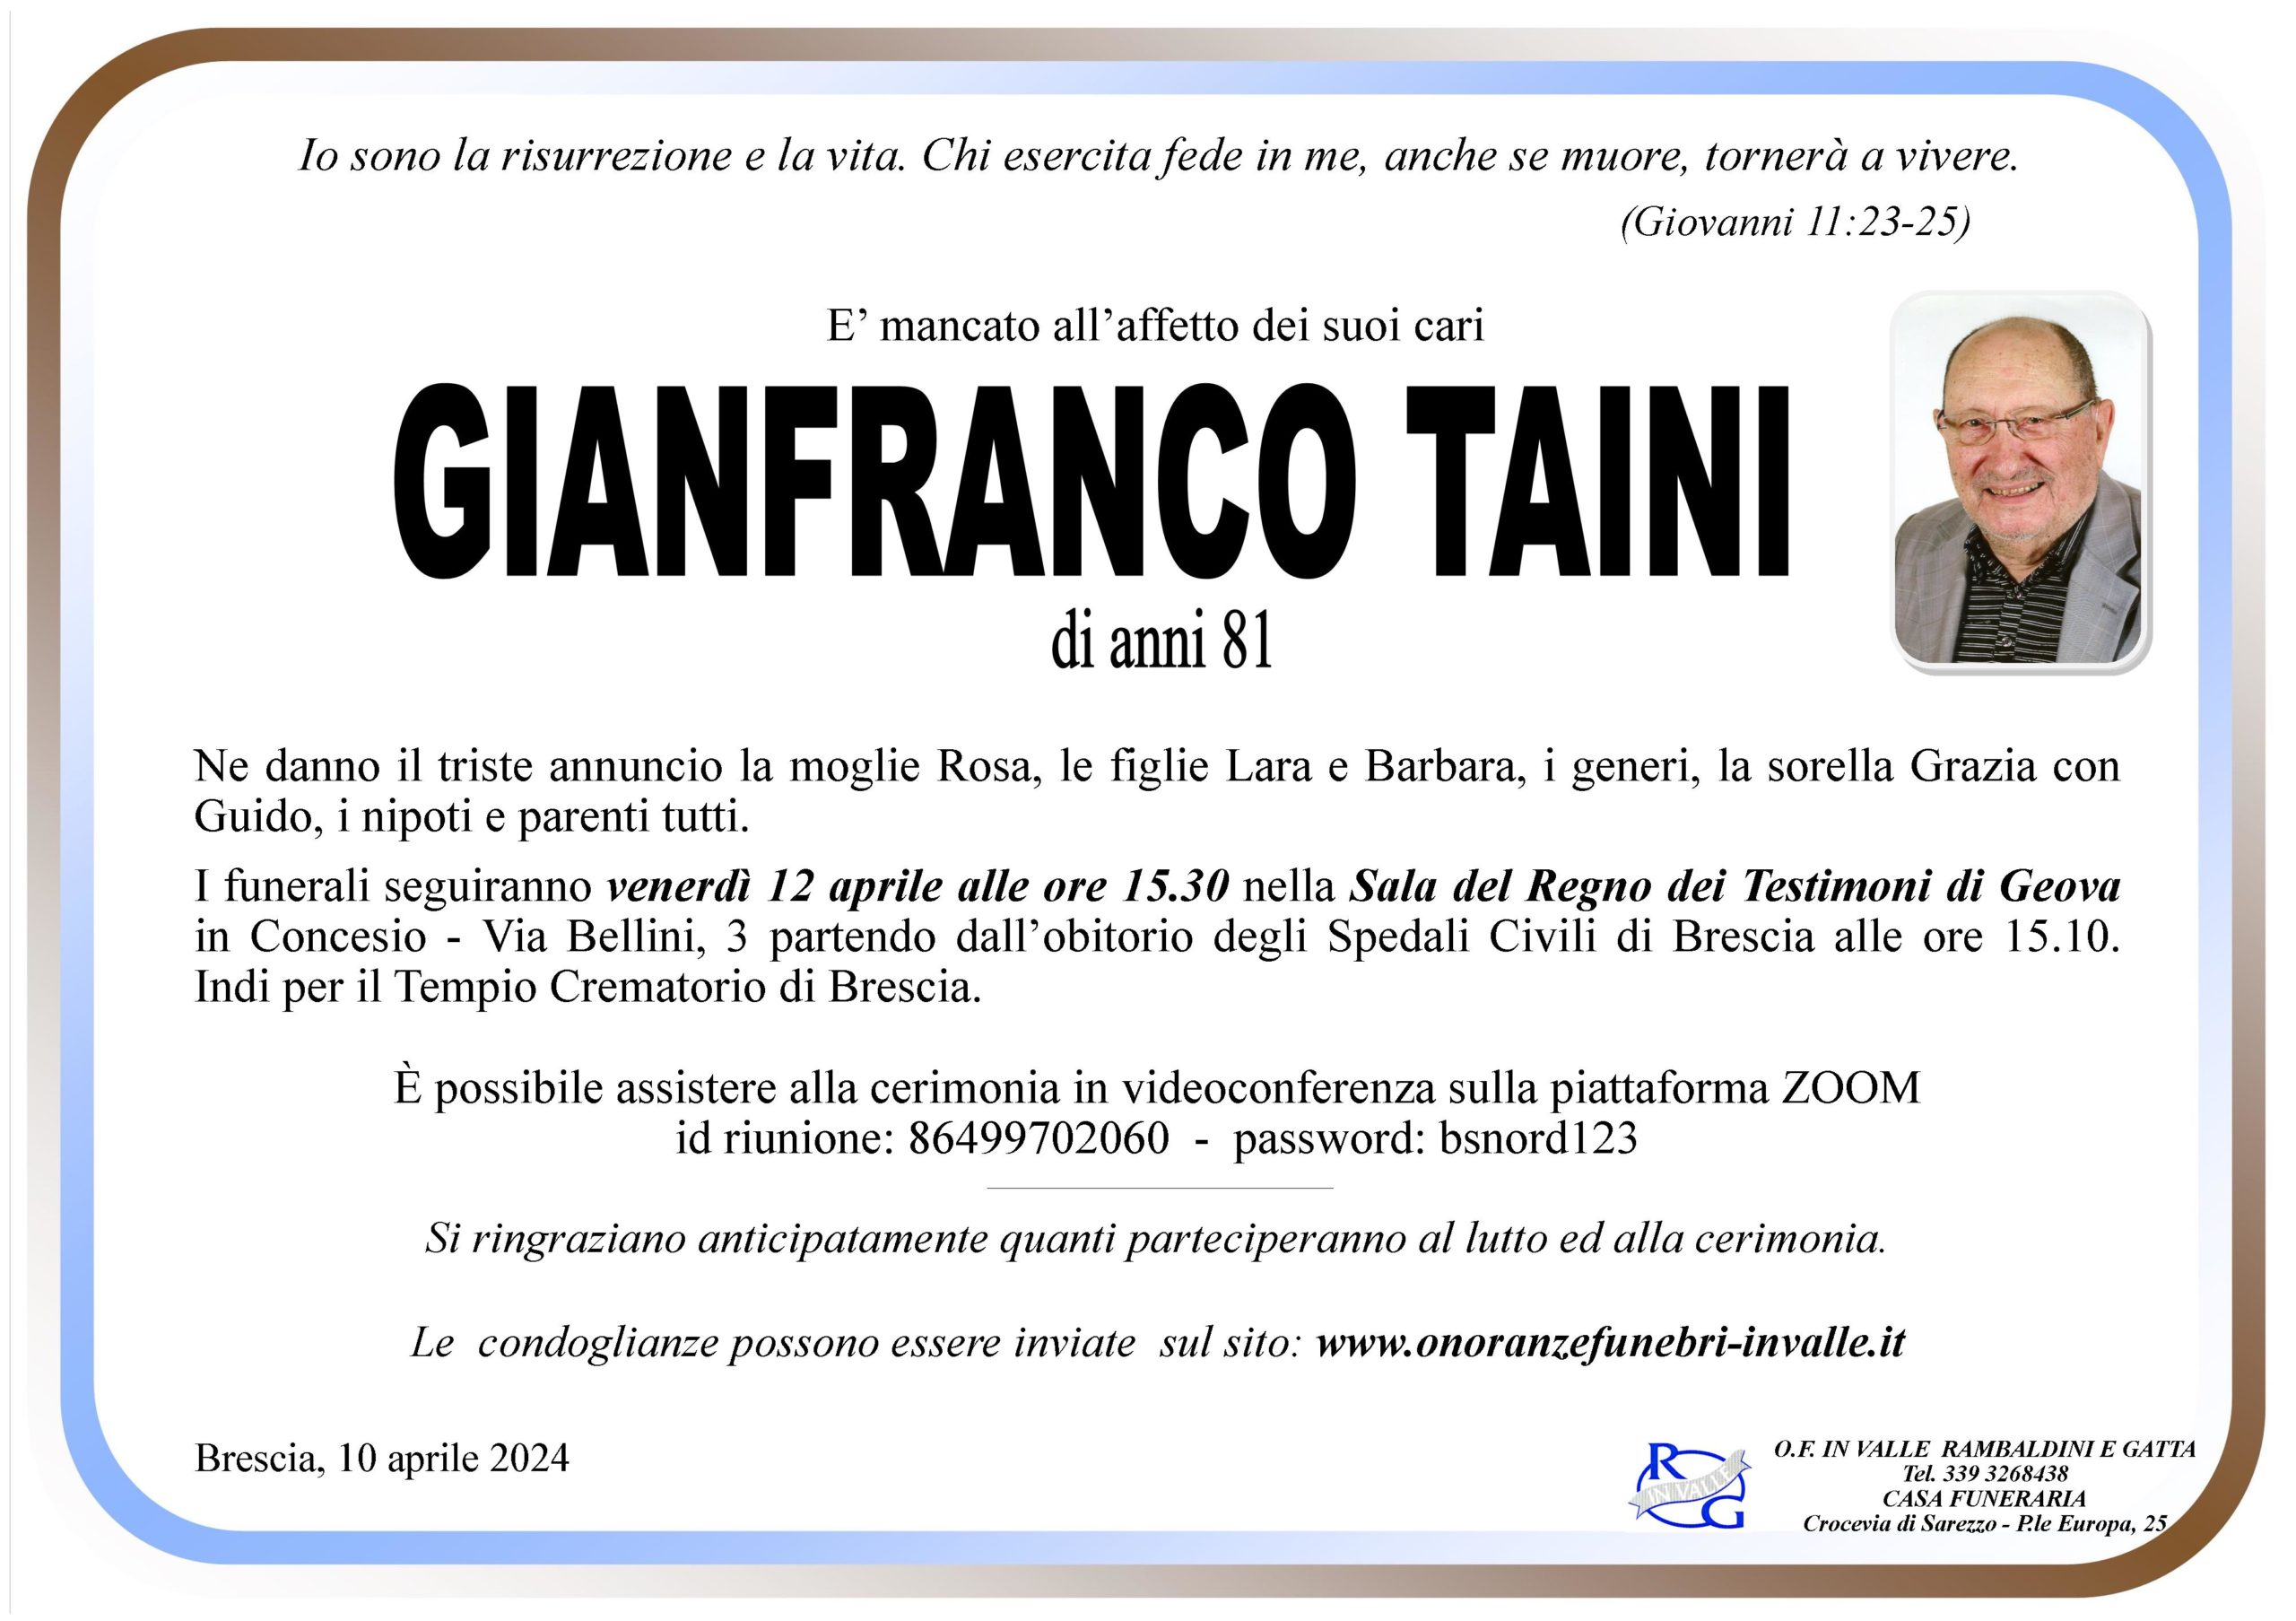 Al momento stai visualizzando Taini Gianfranco